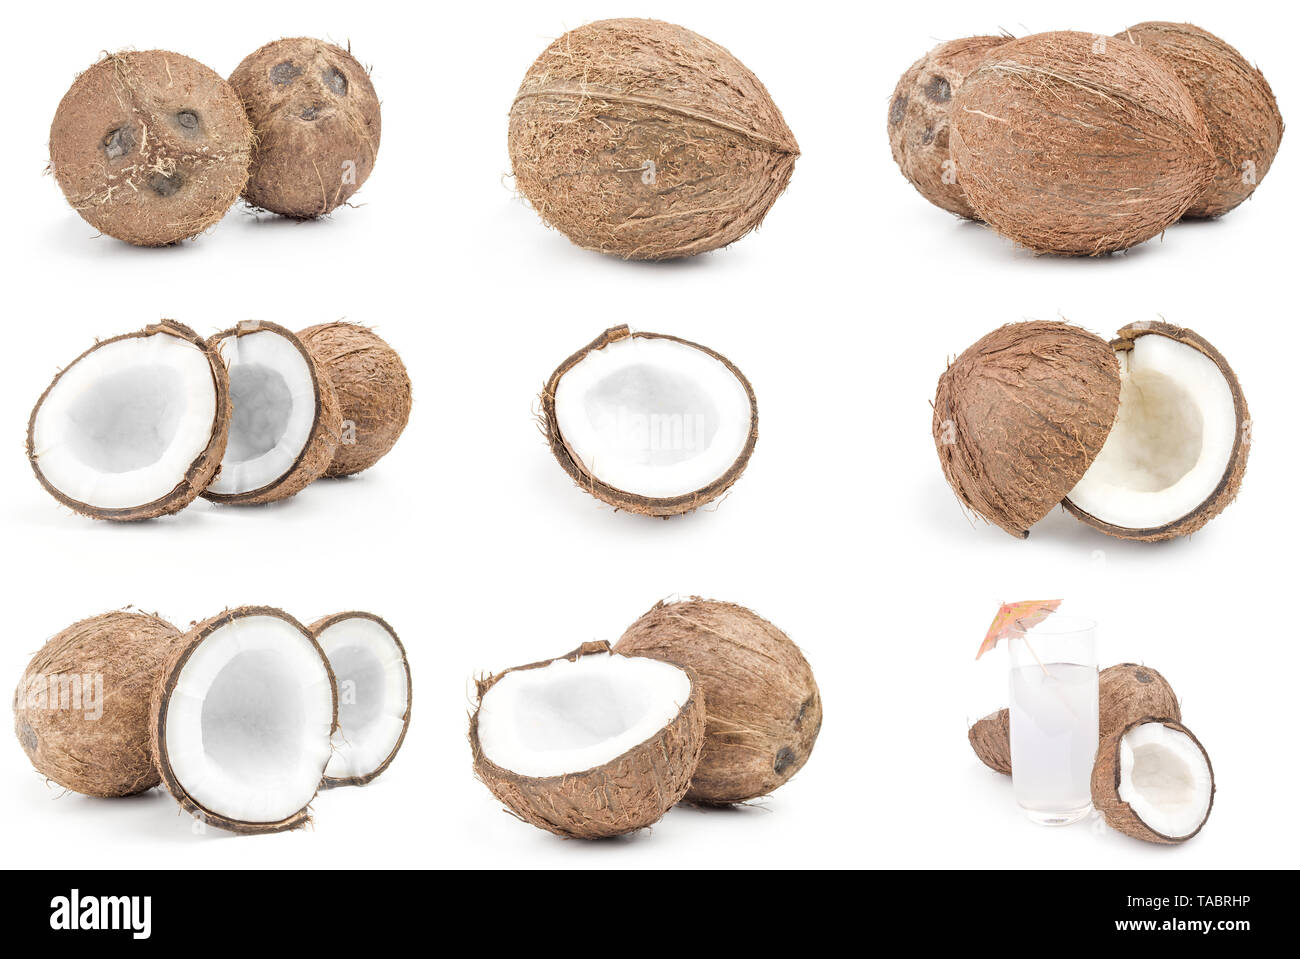 Sammlung von Kokosnuss auf einem weißen Hintergrund Ausschnitt Stockfoto